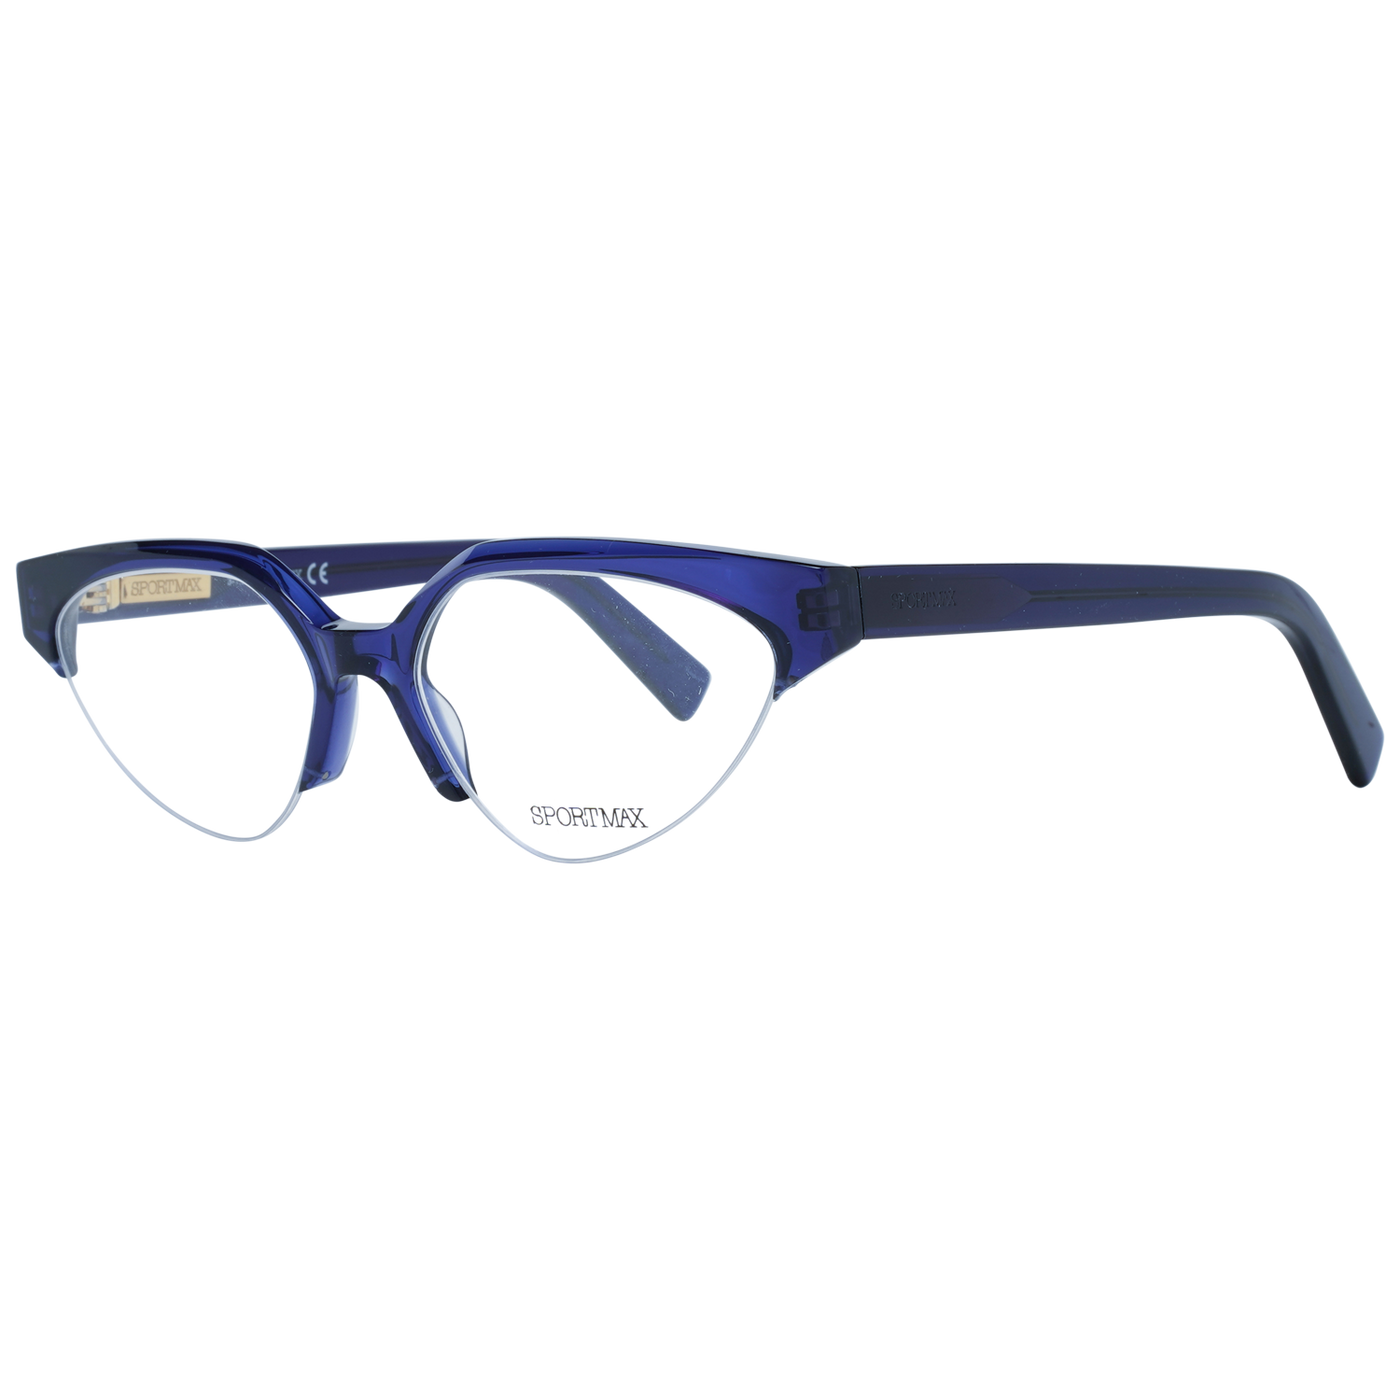 Sportmax Blue Women Optical Frames